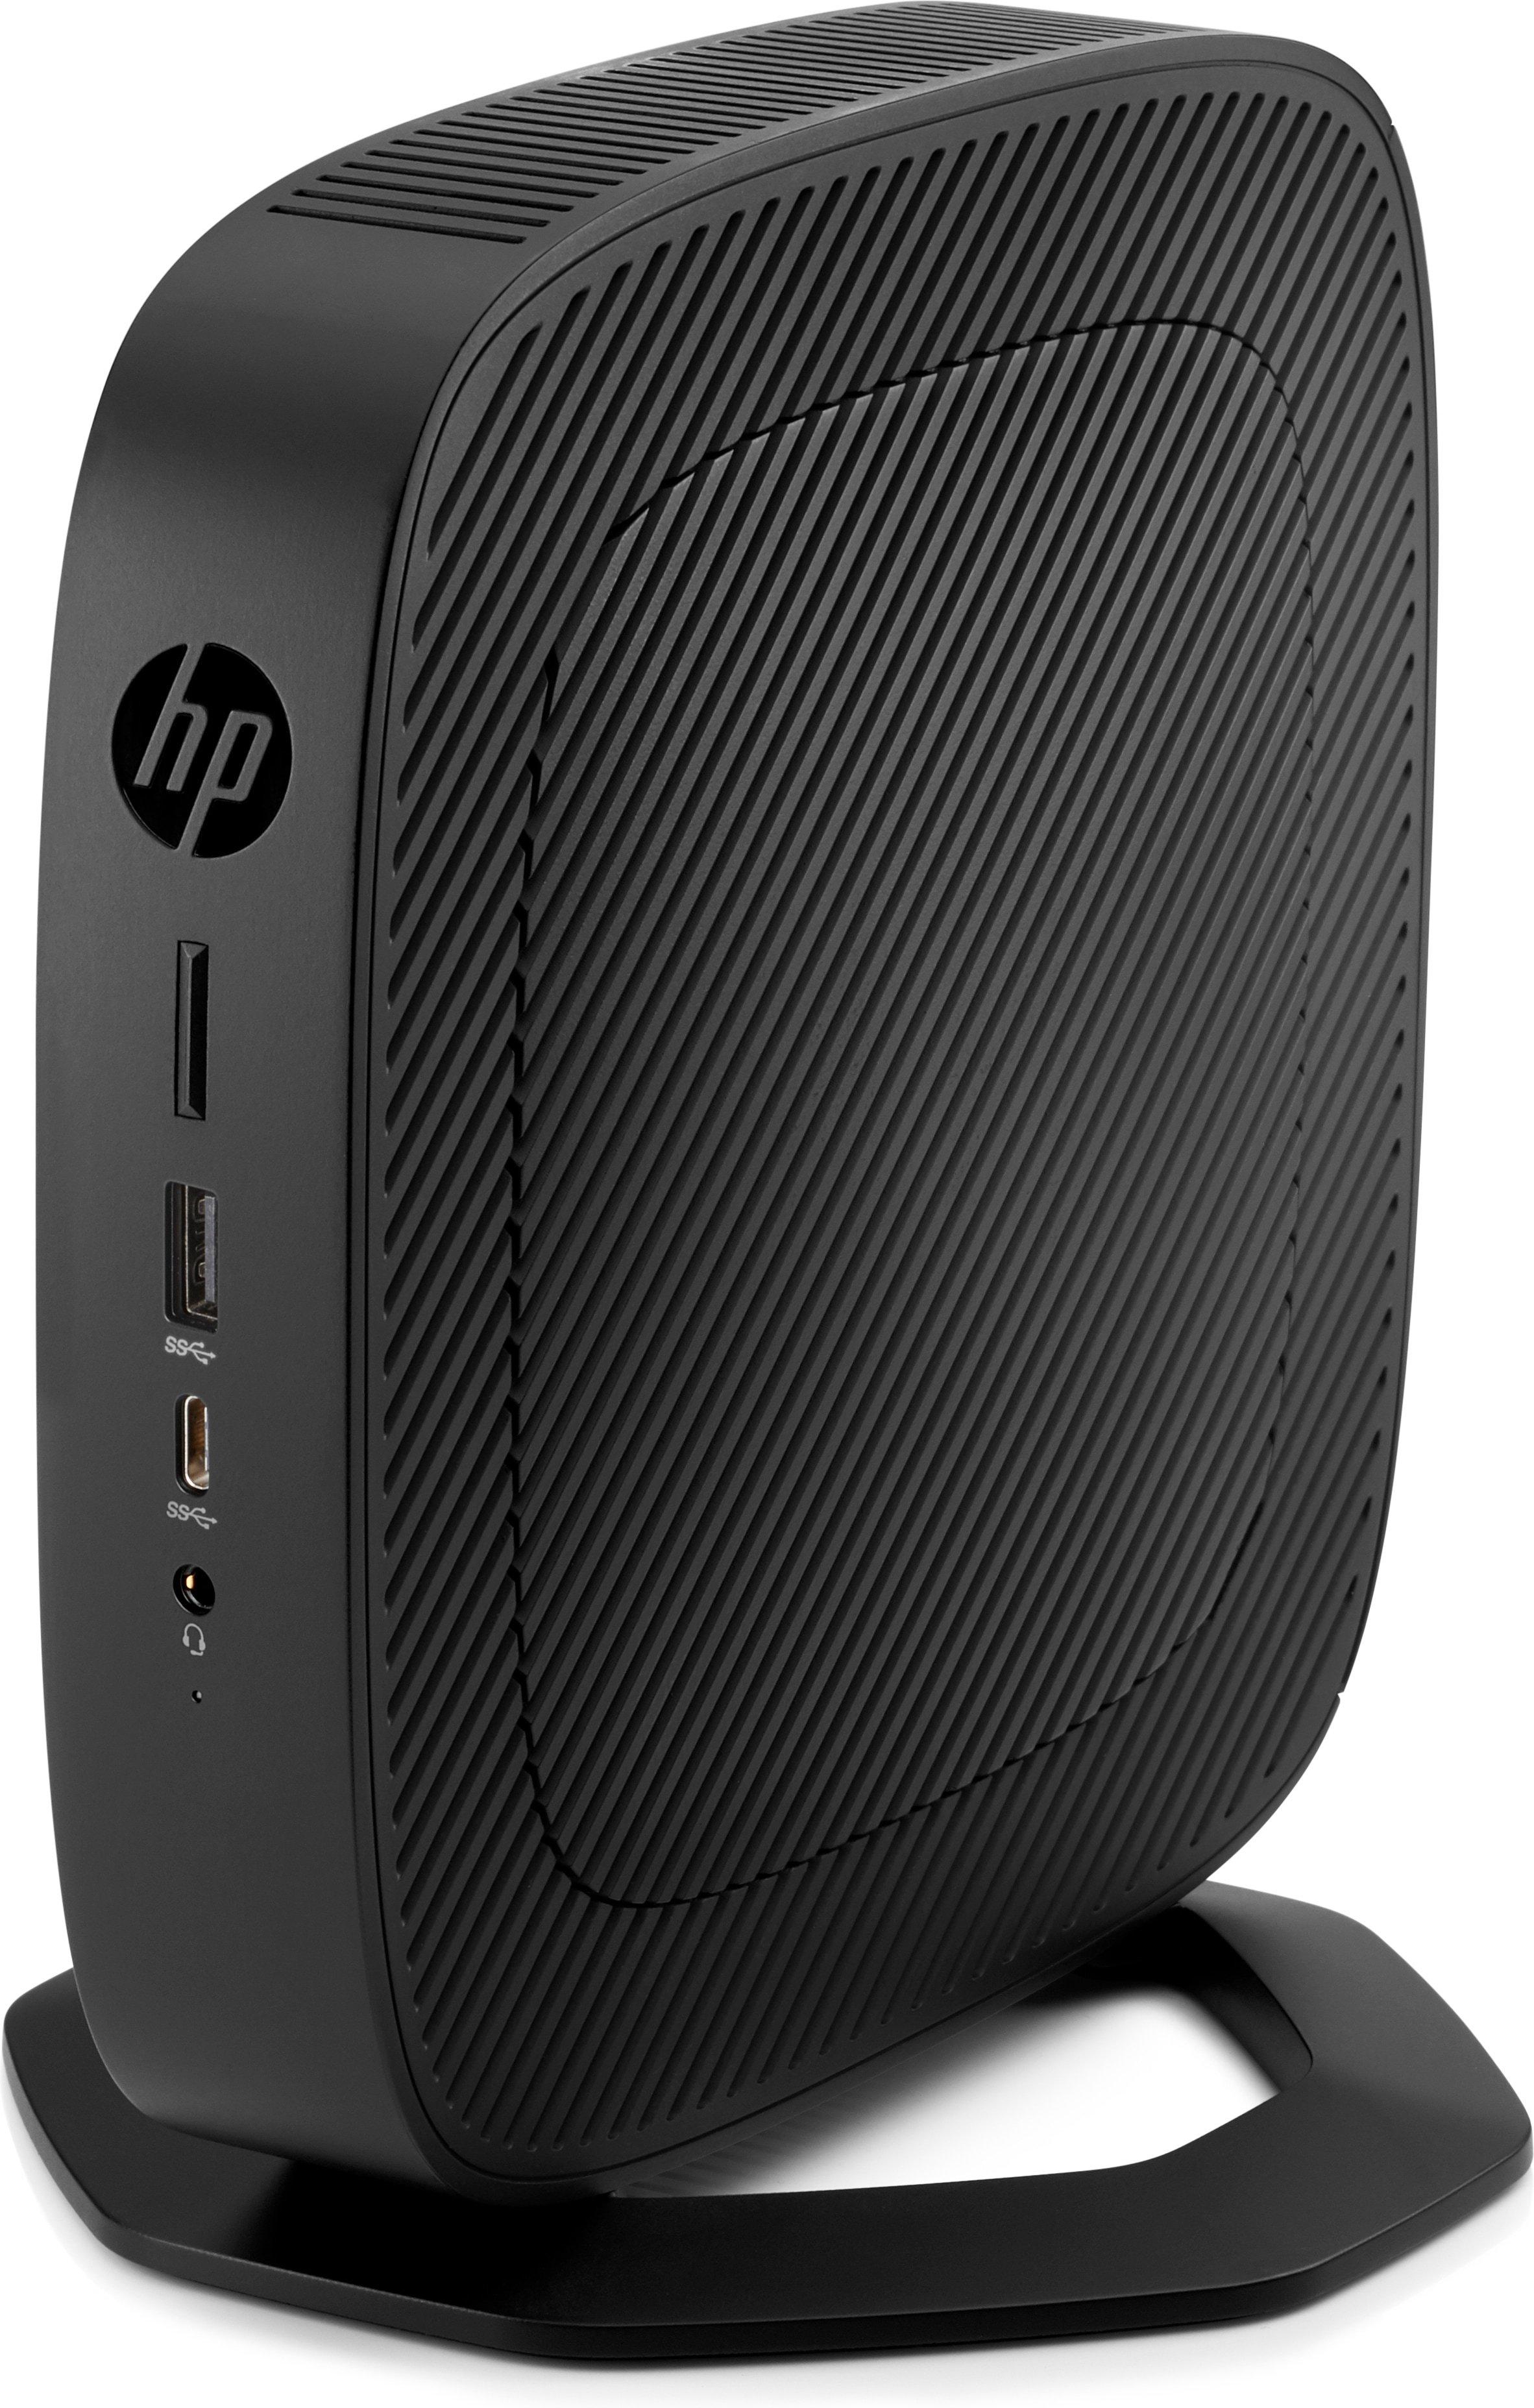 Hewlett-Packard  T540 1,5 GHz Windows 10 IoT Enterprise 1,4 kg Nero R1305G 